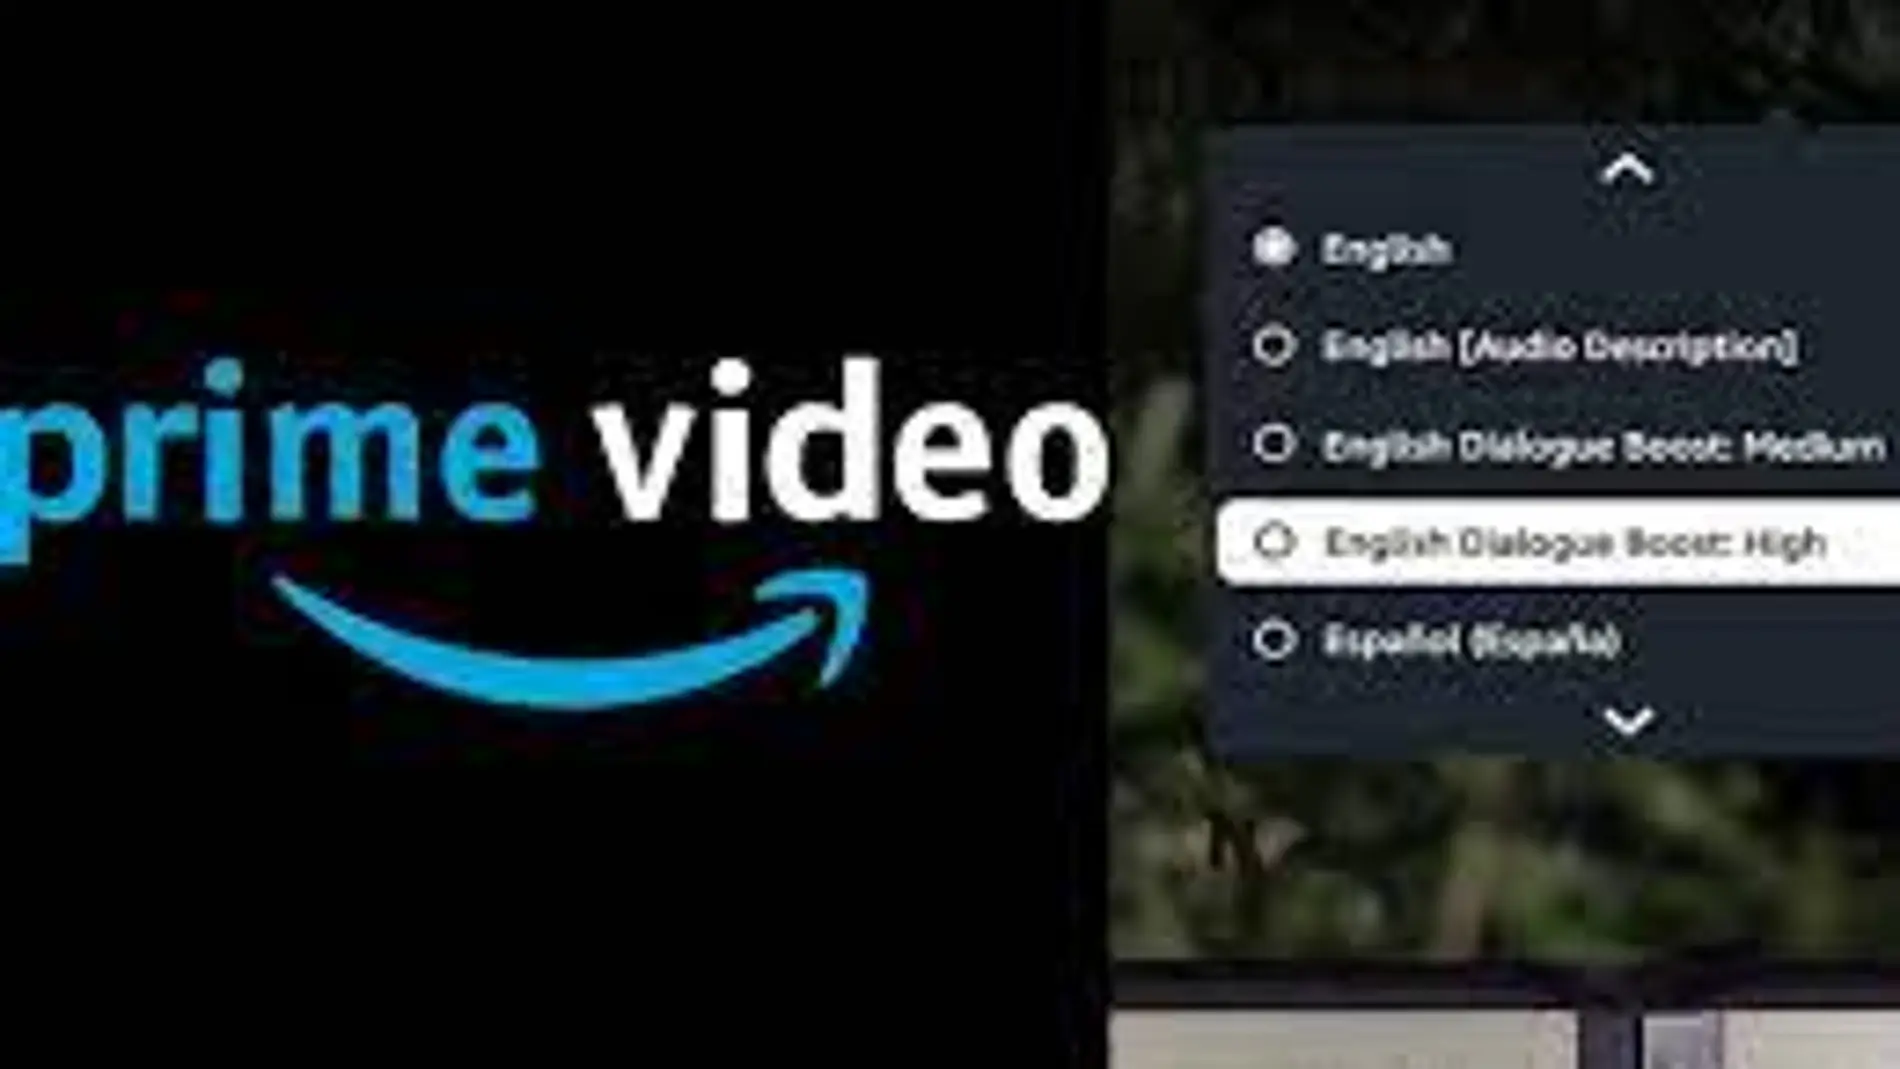 ¿Cómo mejora Amazon Prime Video la calidad de sus diálogos?